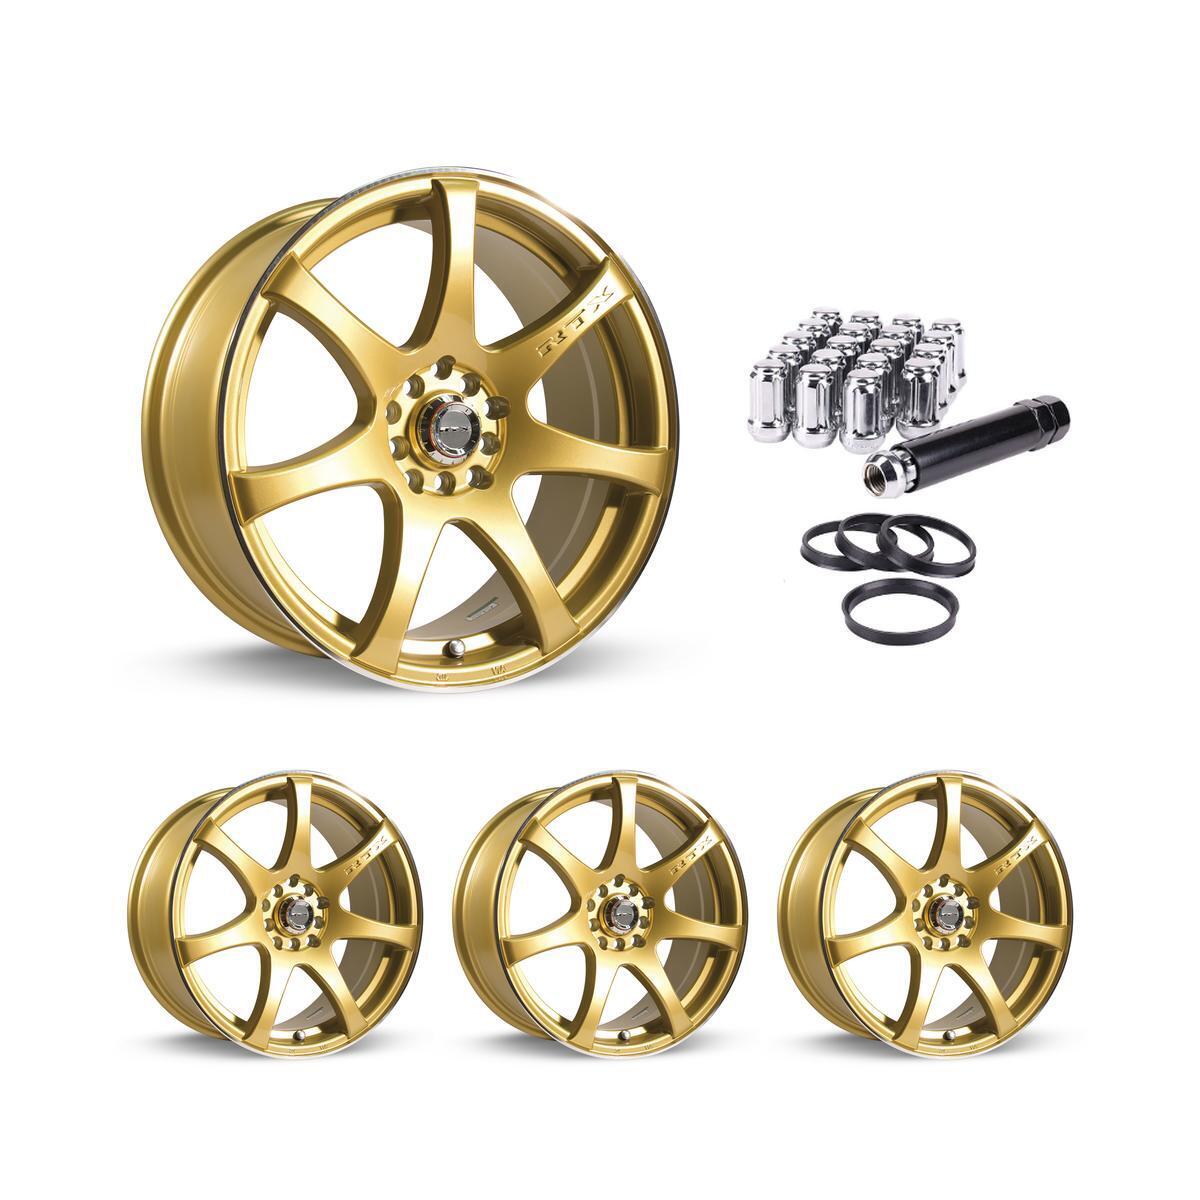 Wheel Rims Set with Chrome Lug Nuts Kit for 00-01 Kia Sephia P814407 15 inch